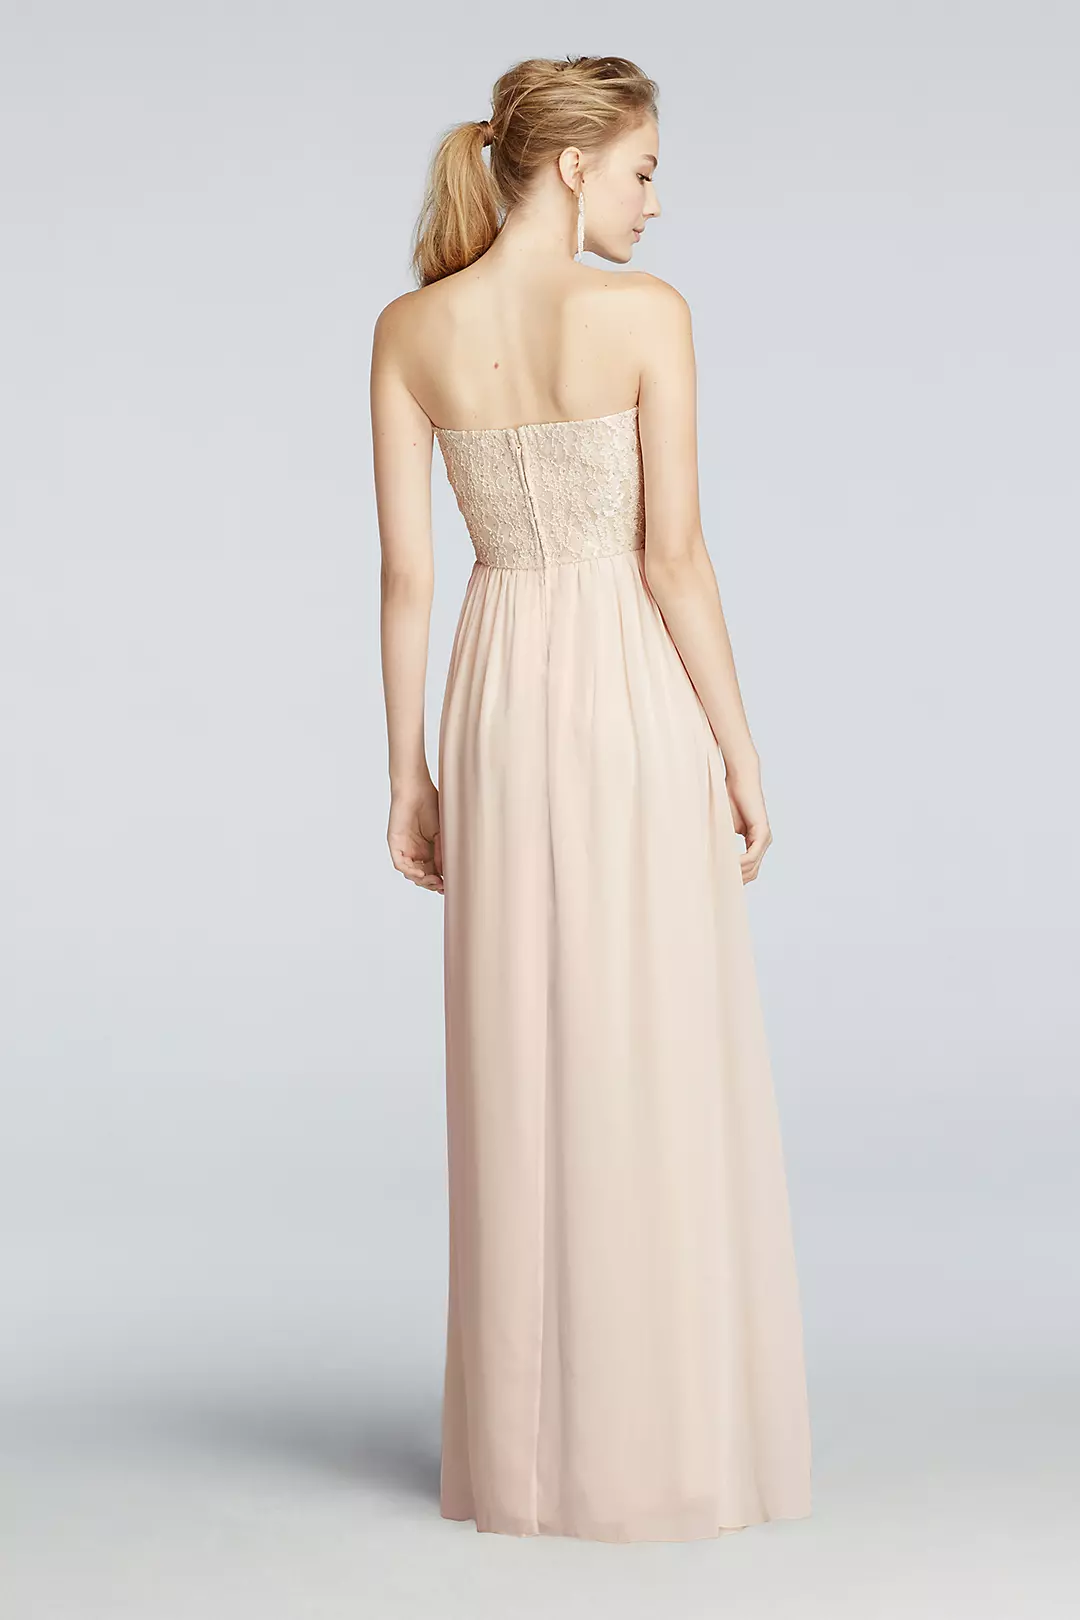 Strapless Chiffon Pastel Prom Dress  Image 2